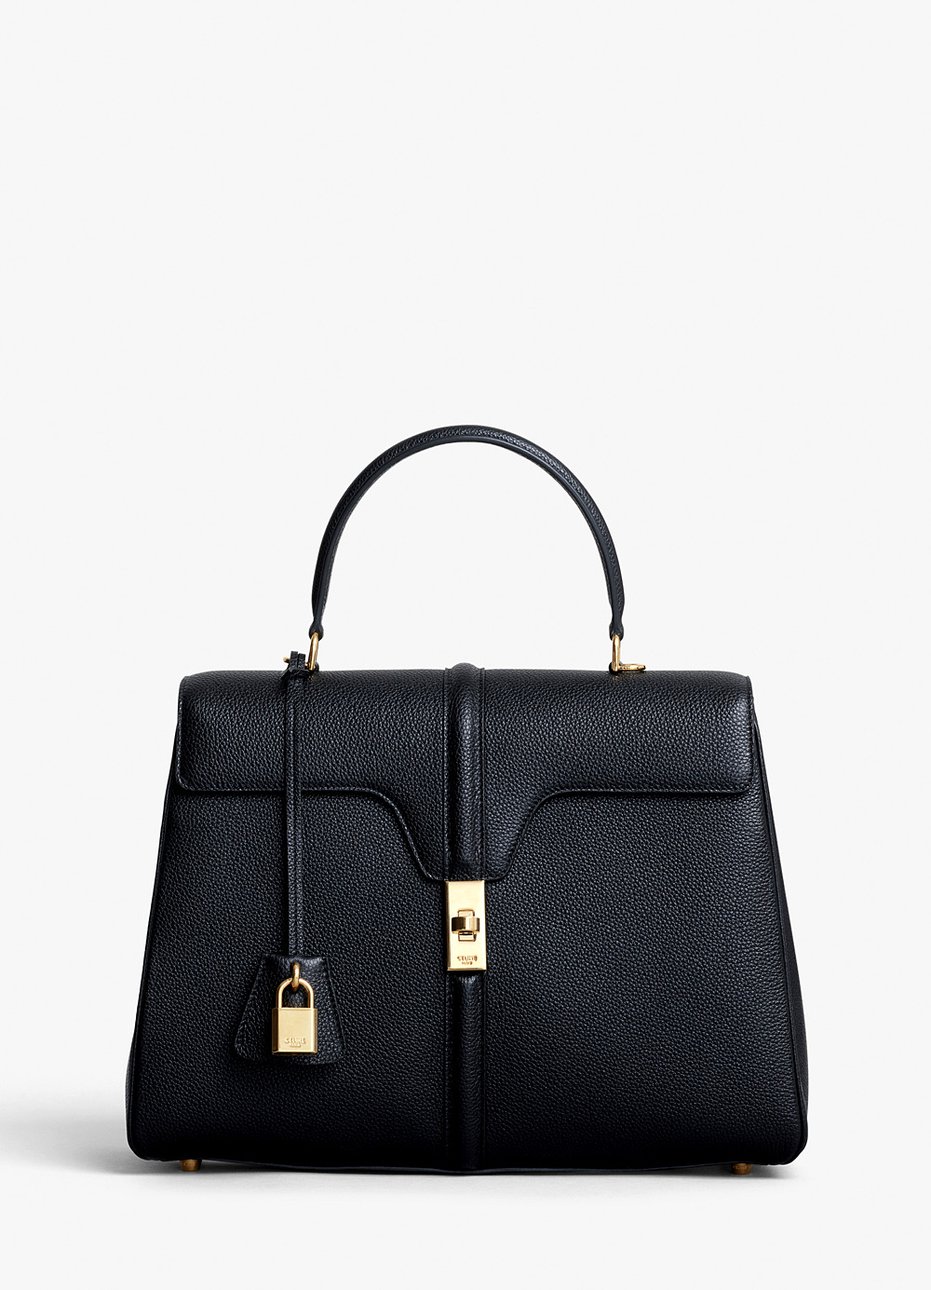 Модель новой сумки Celine “16”, первогодетища Слимана на новом посту, в черном цвете, представленная в двух вариантах размера